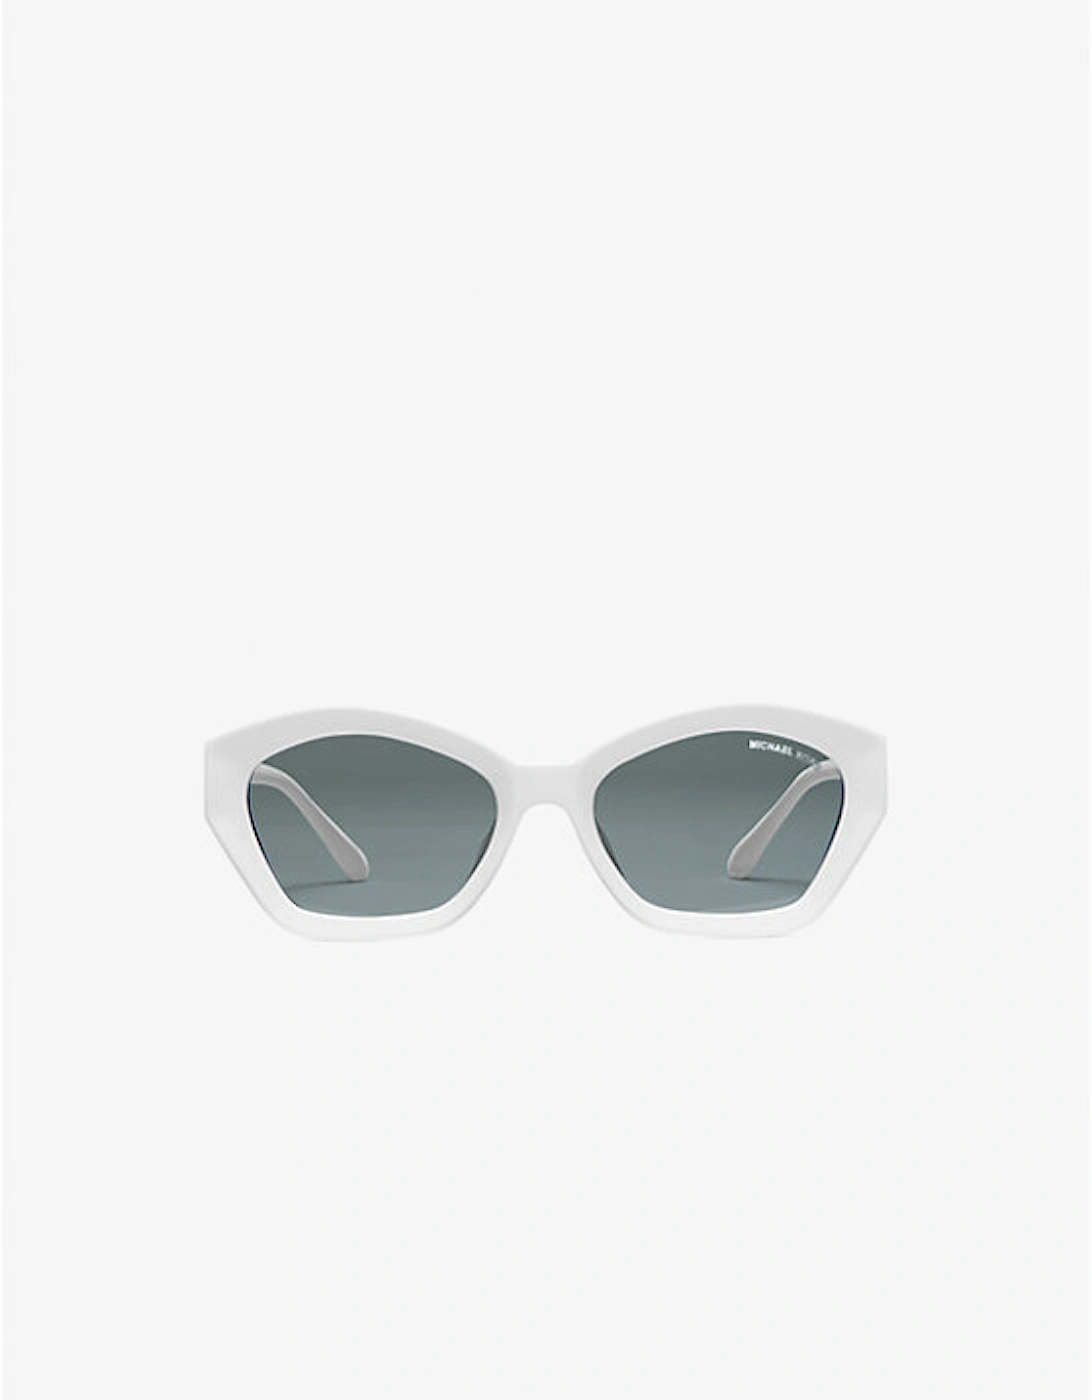 Bel Air Sunglasses, 2 of 1